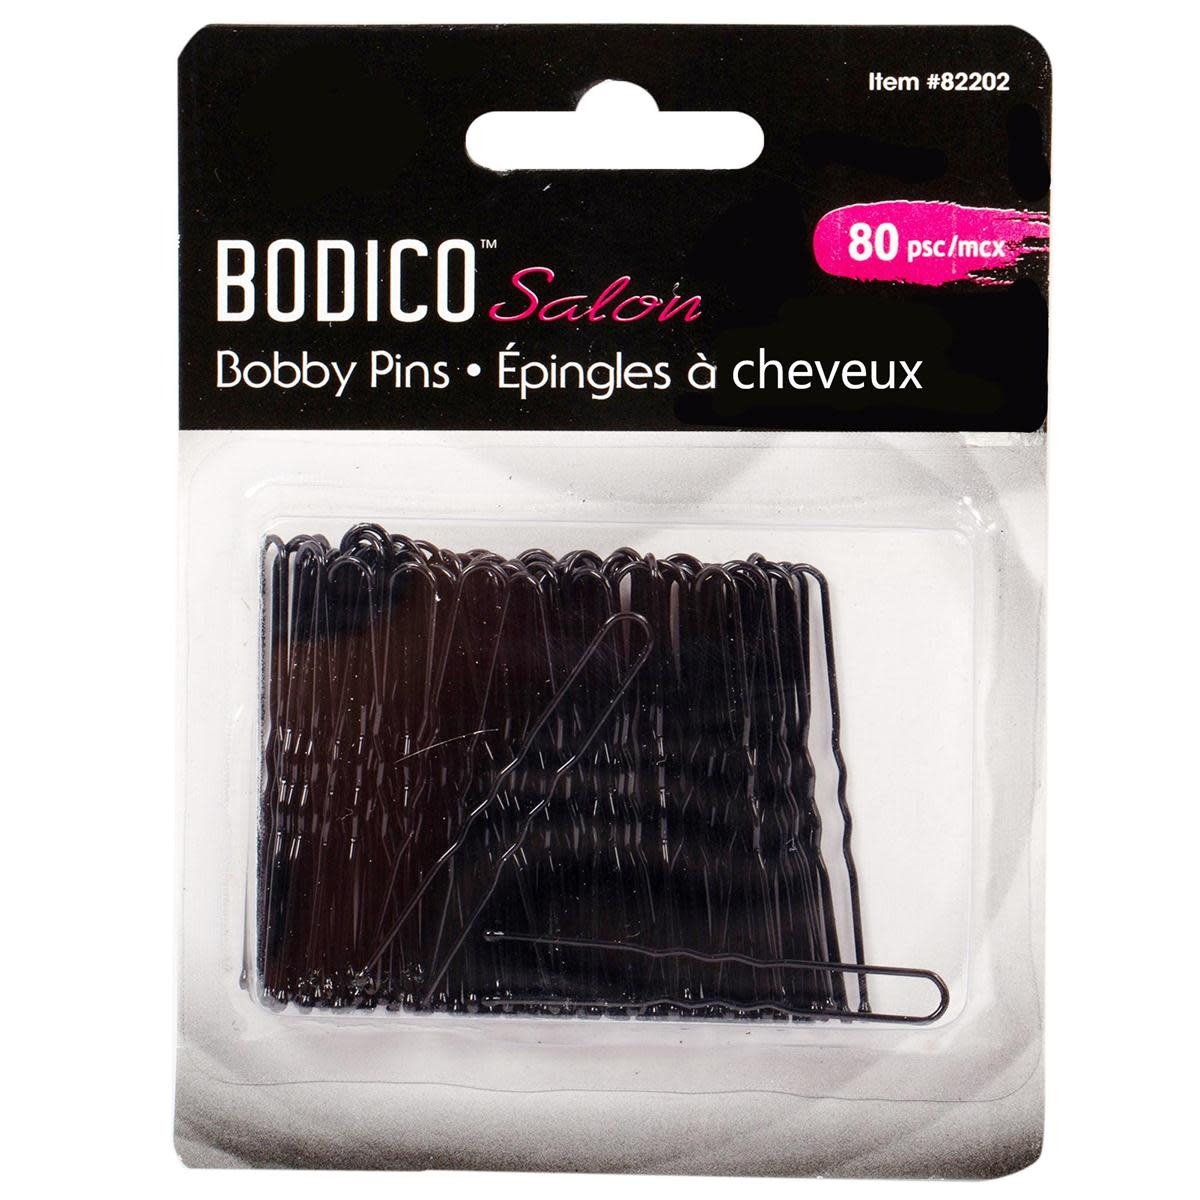 " Bobby Pins" noires Bodico 82202, Paquet de 80